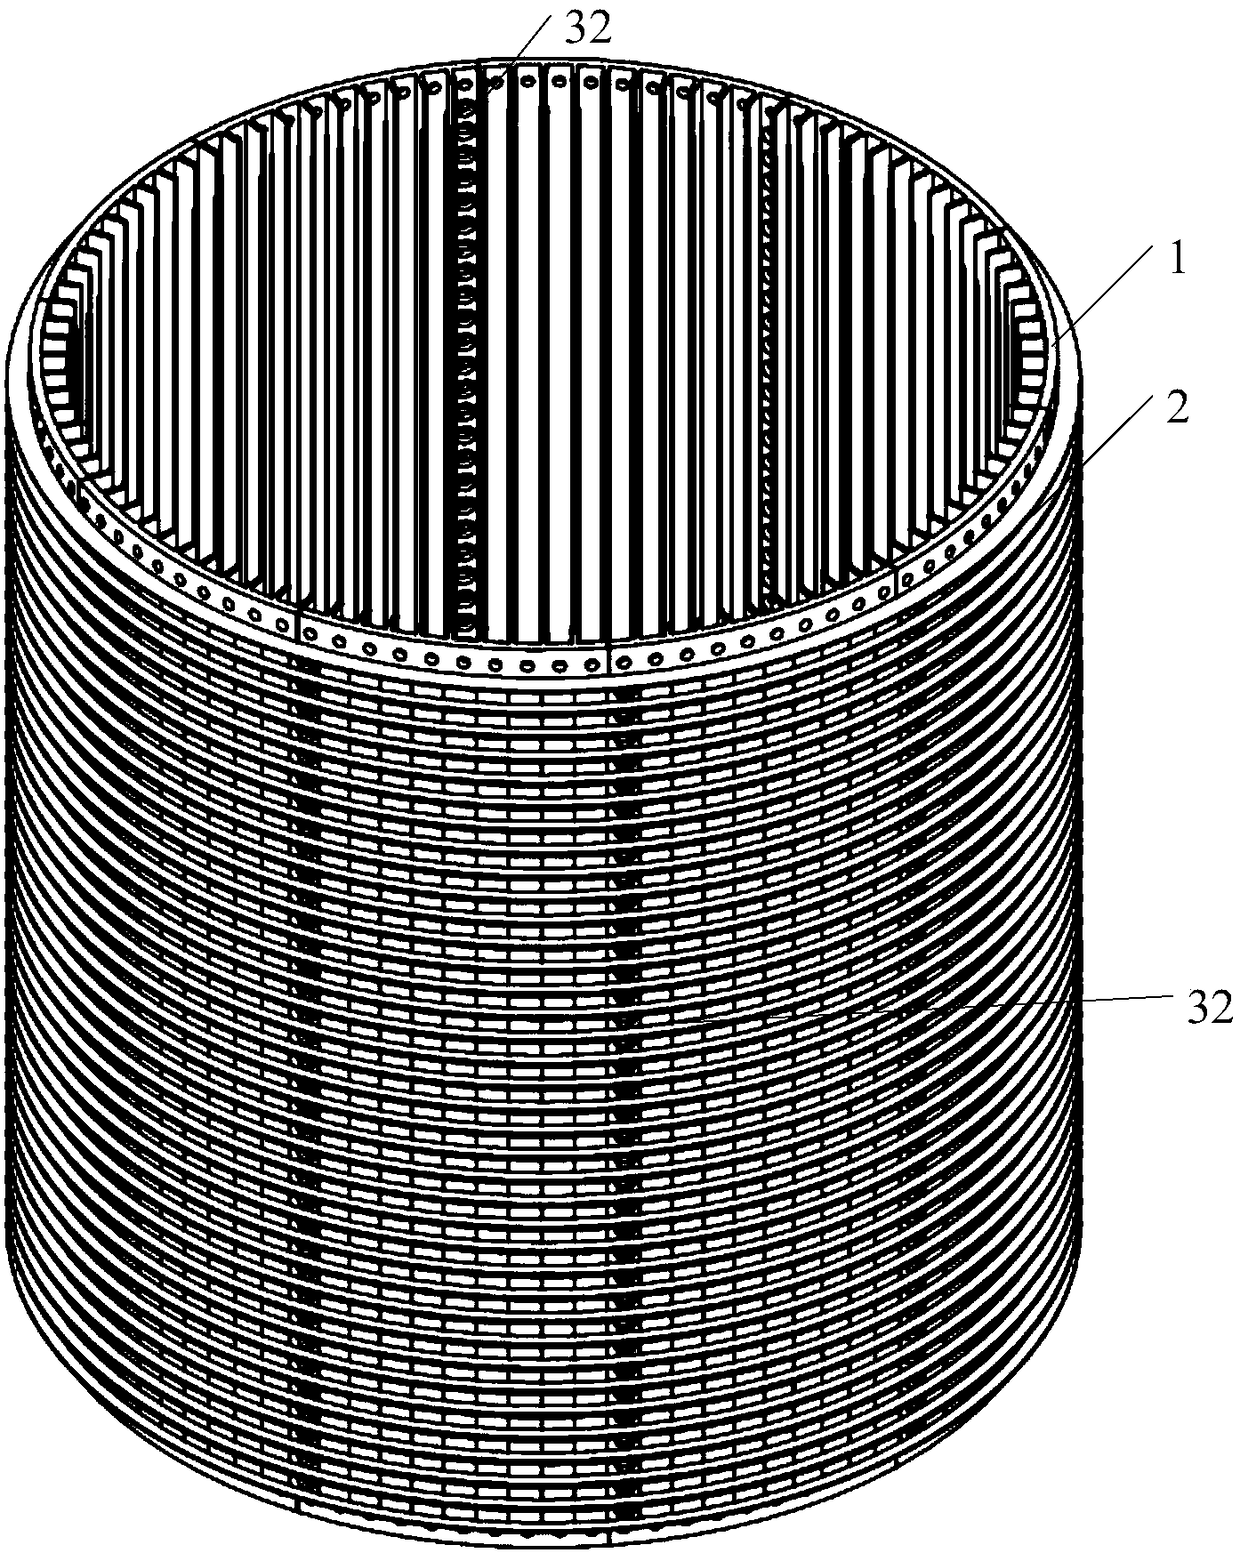 An optical fiber core butt matrix structure